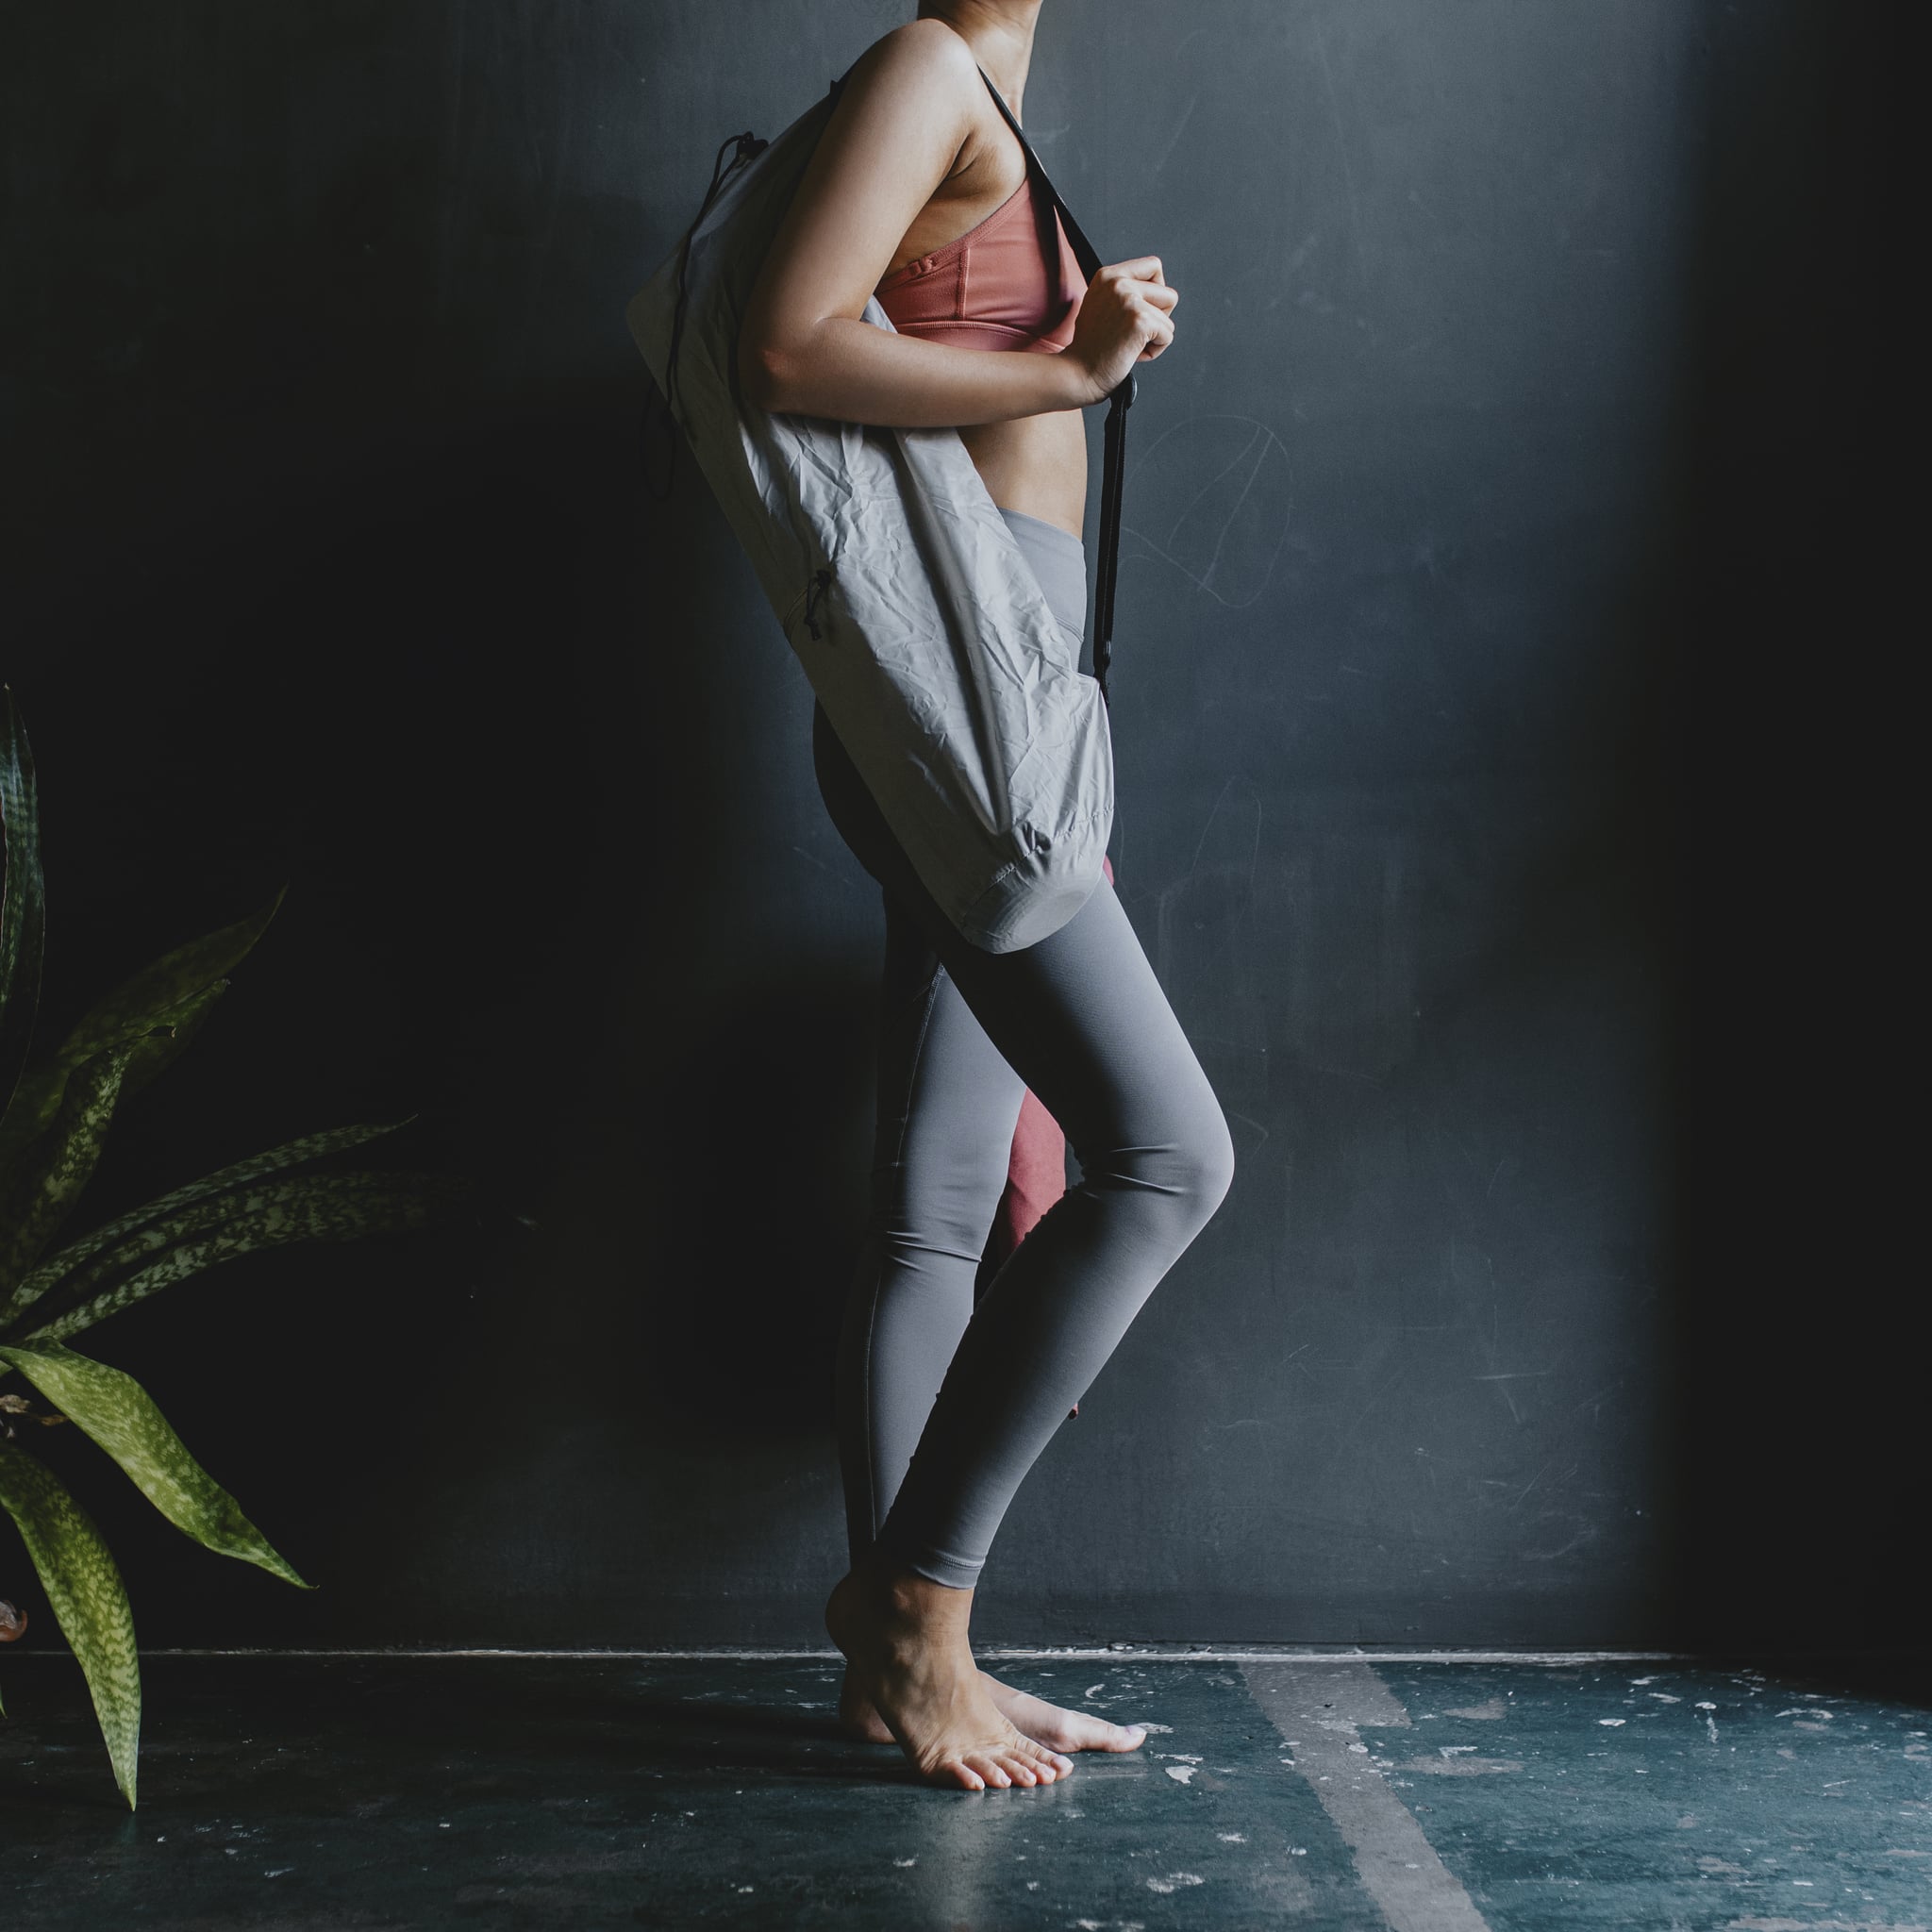 Leather Yoga Sling with Optional Yoloha Cork Yoga Mat – Cold